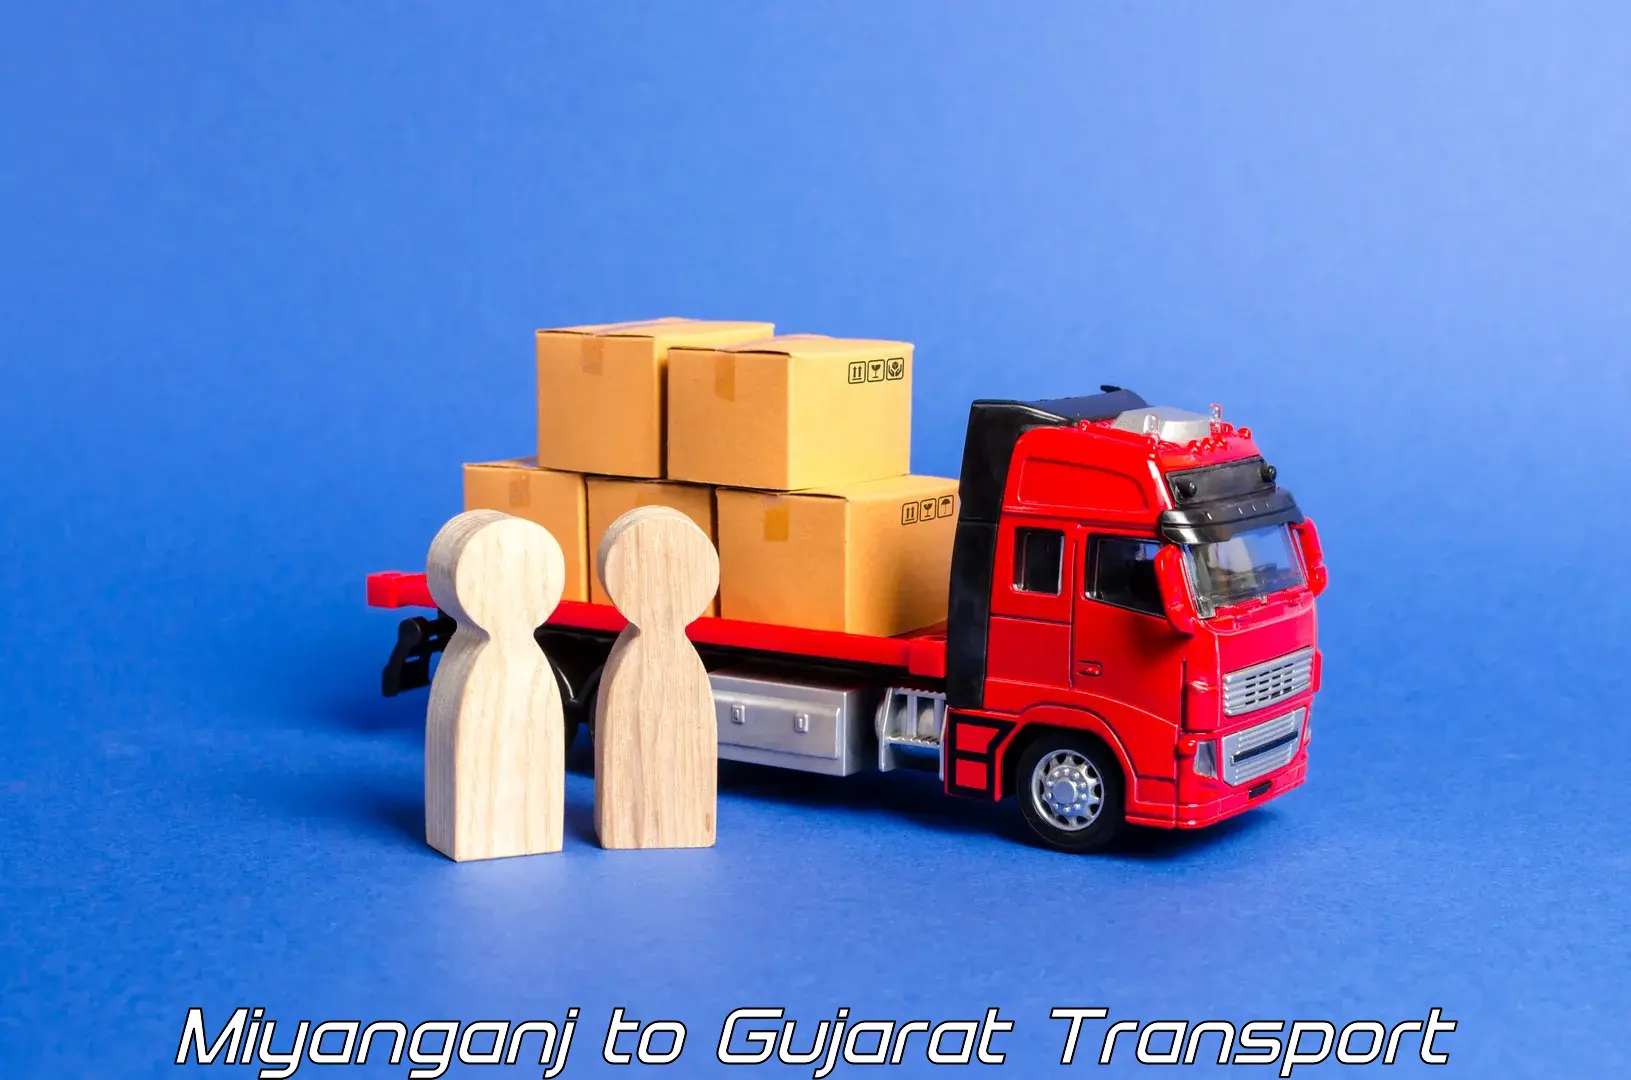 Transport shared services Miyanganj to Hansot